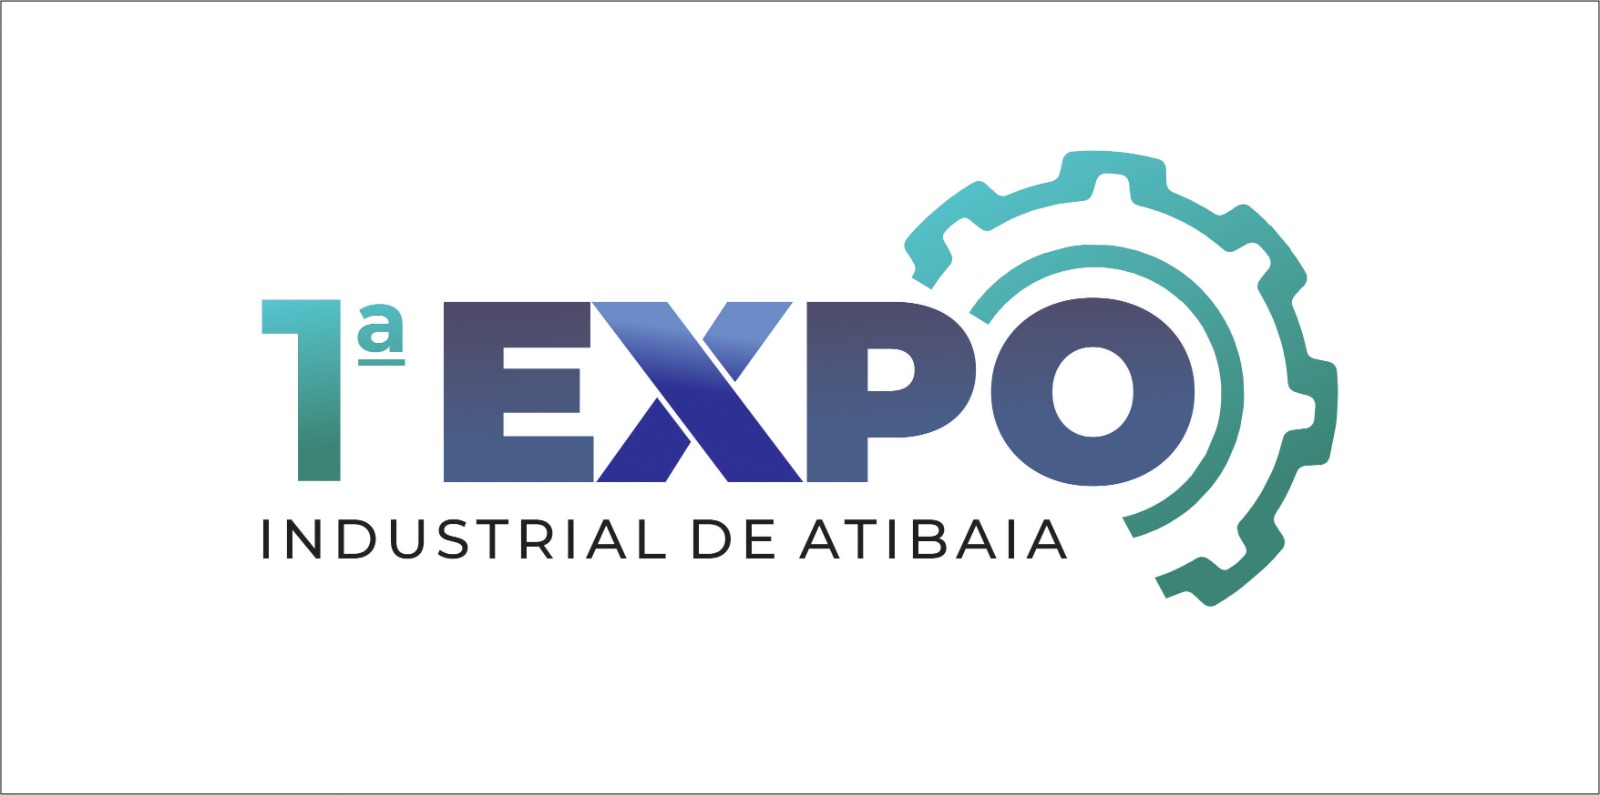 1ª Expo Industrial de Atibaia terá Rodada de Crédito para todo o setor econômico